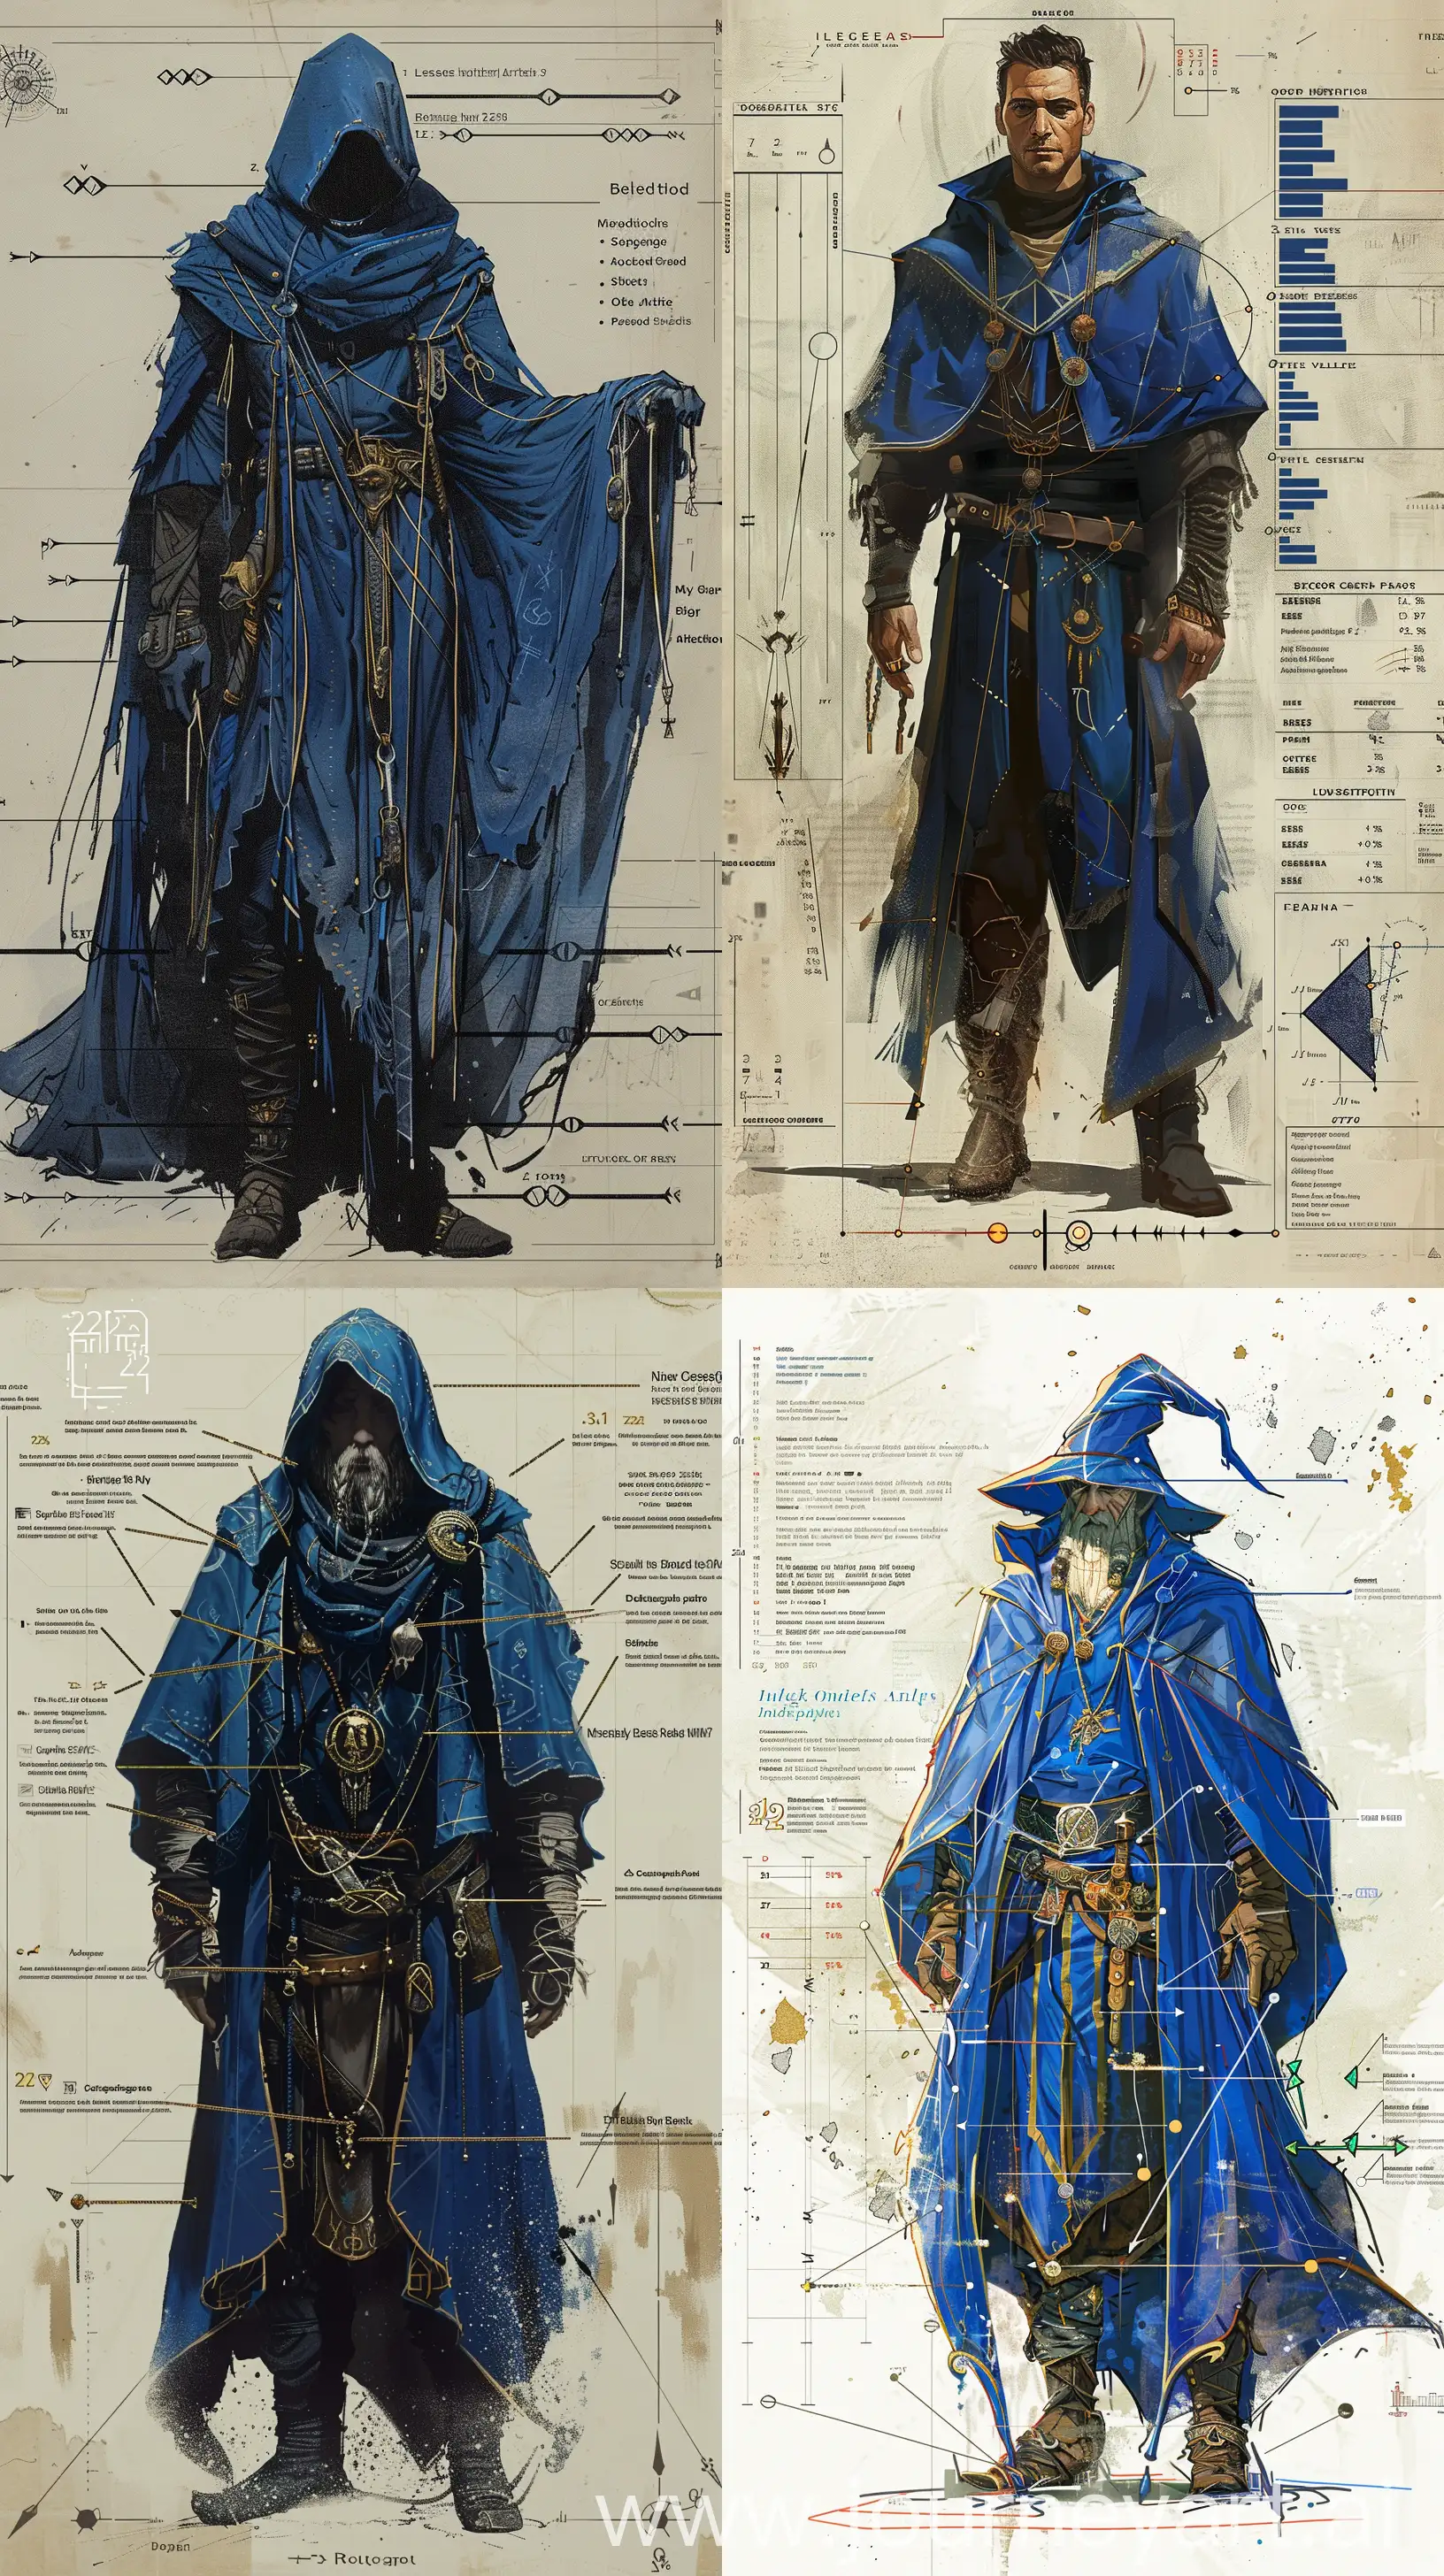 Young-Cheesemancer-Wizard-in-Detailed-Blue-Robe-Dark-High-Fantasy-Art